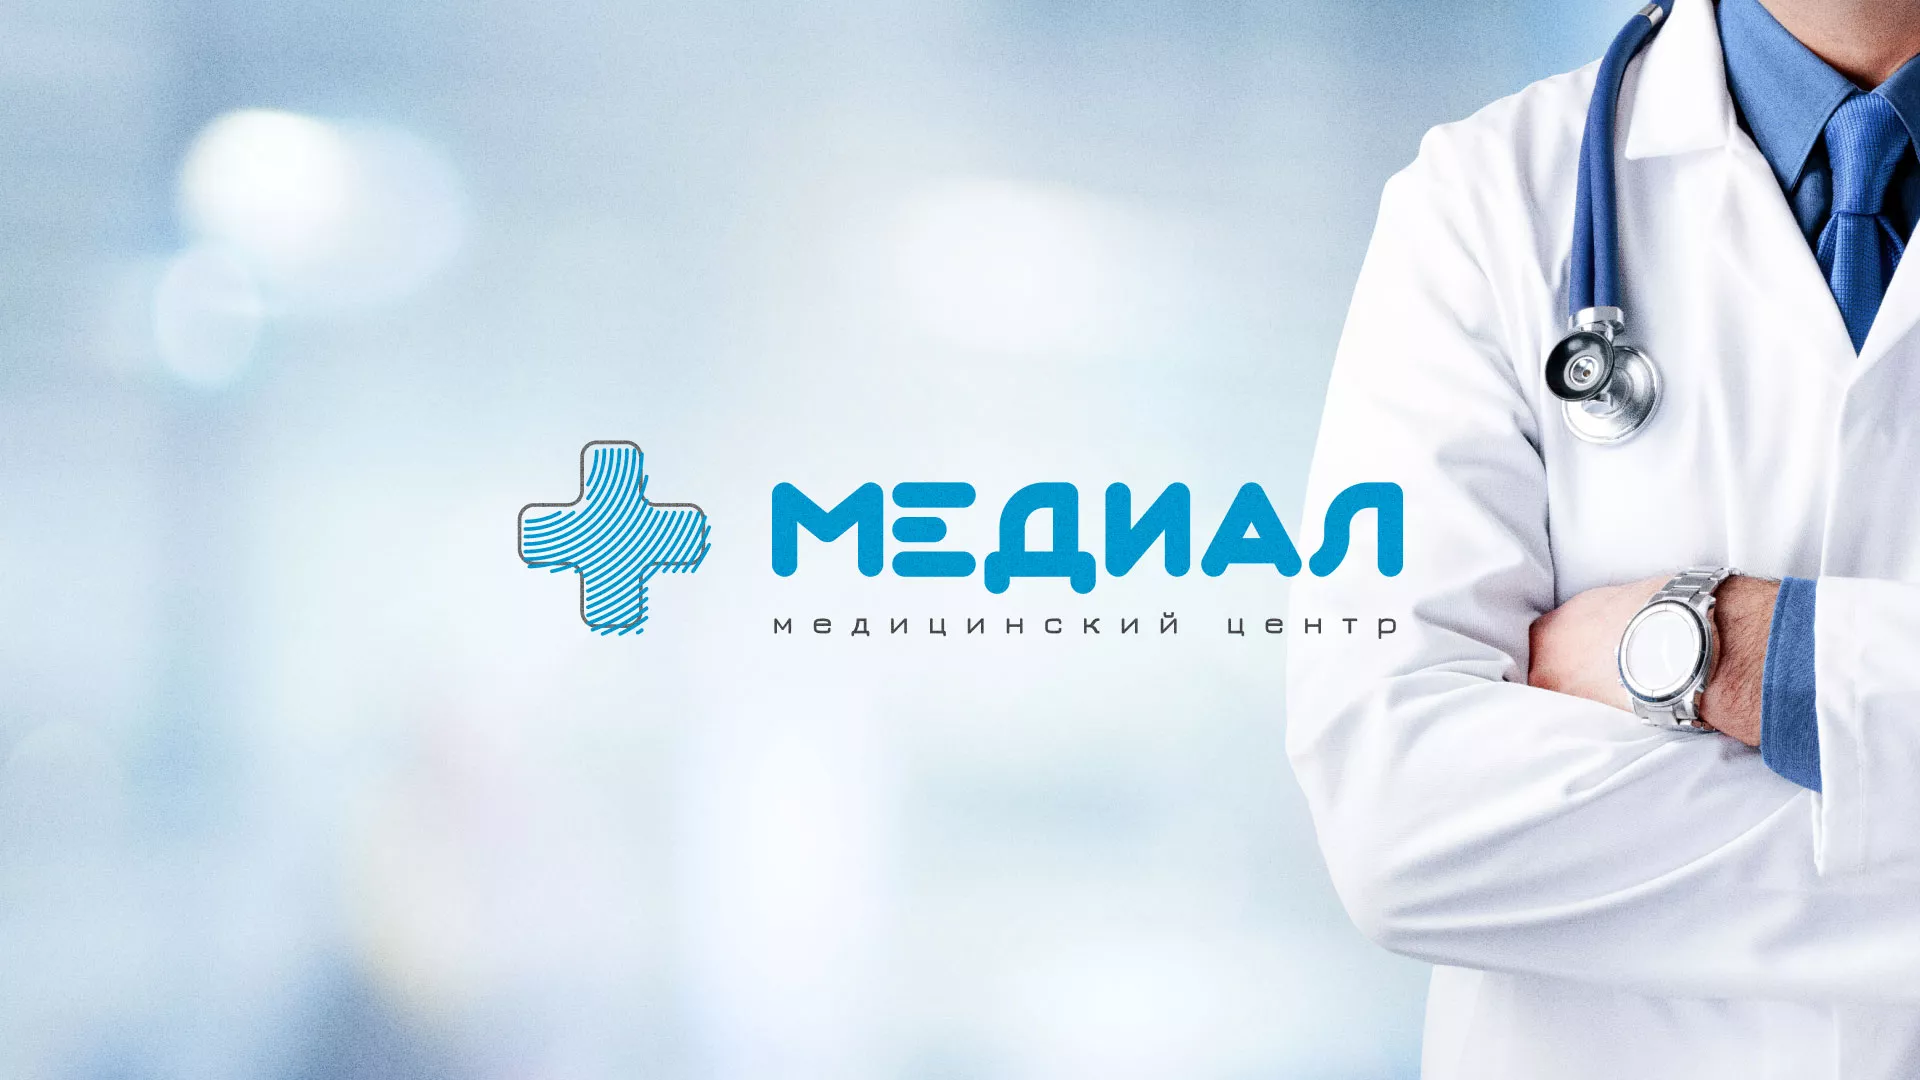 Создание сайта для медицинского центра «Медиал» в Майском